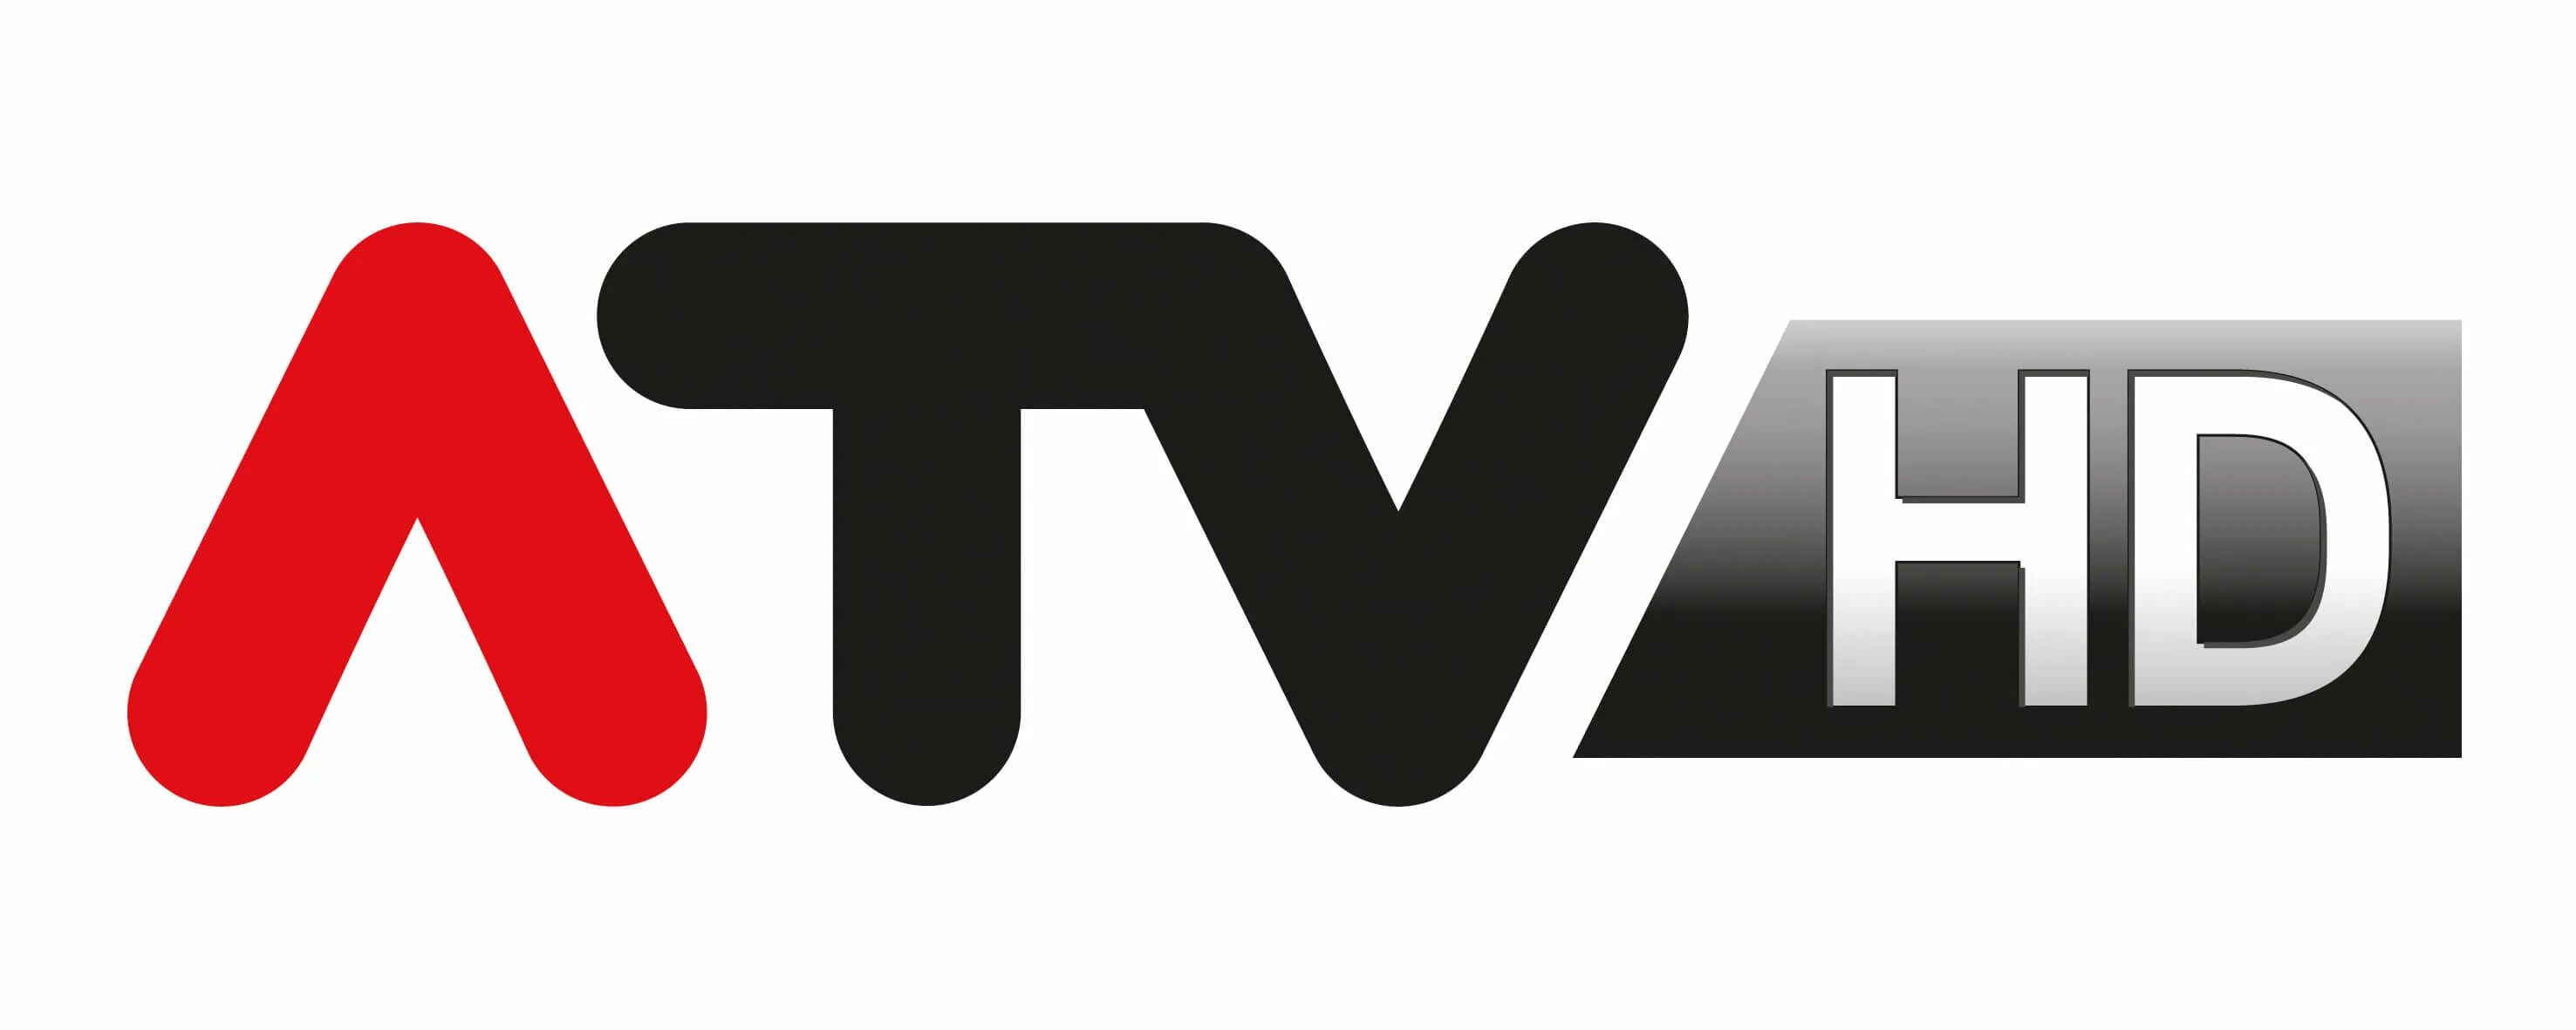 Atv tv izle. Atv логотип. АТВ логотип на прозрачном фоне. Квадроцикл лого.